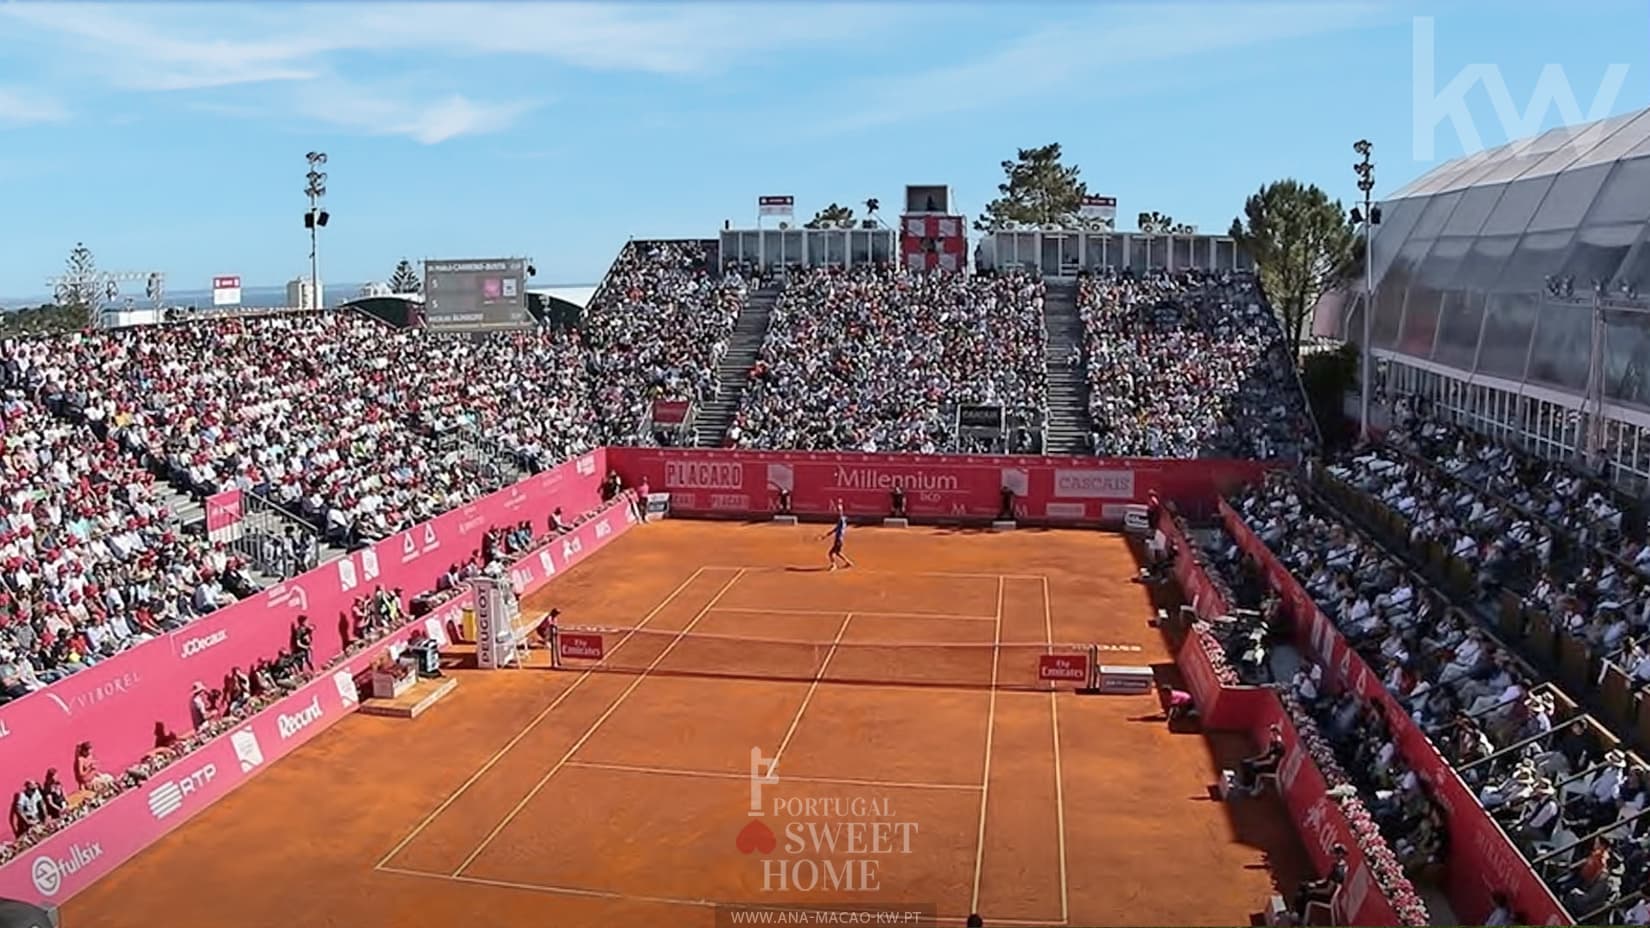 Terrain de tennis d'Estoril